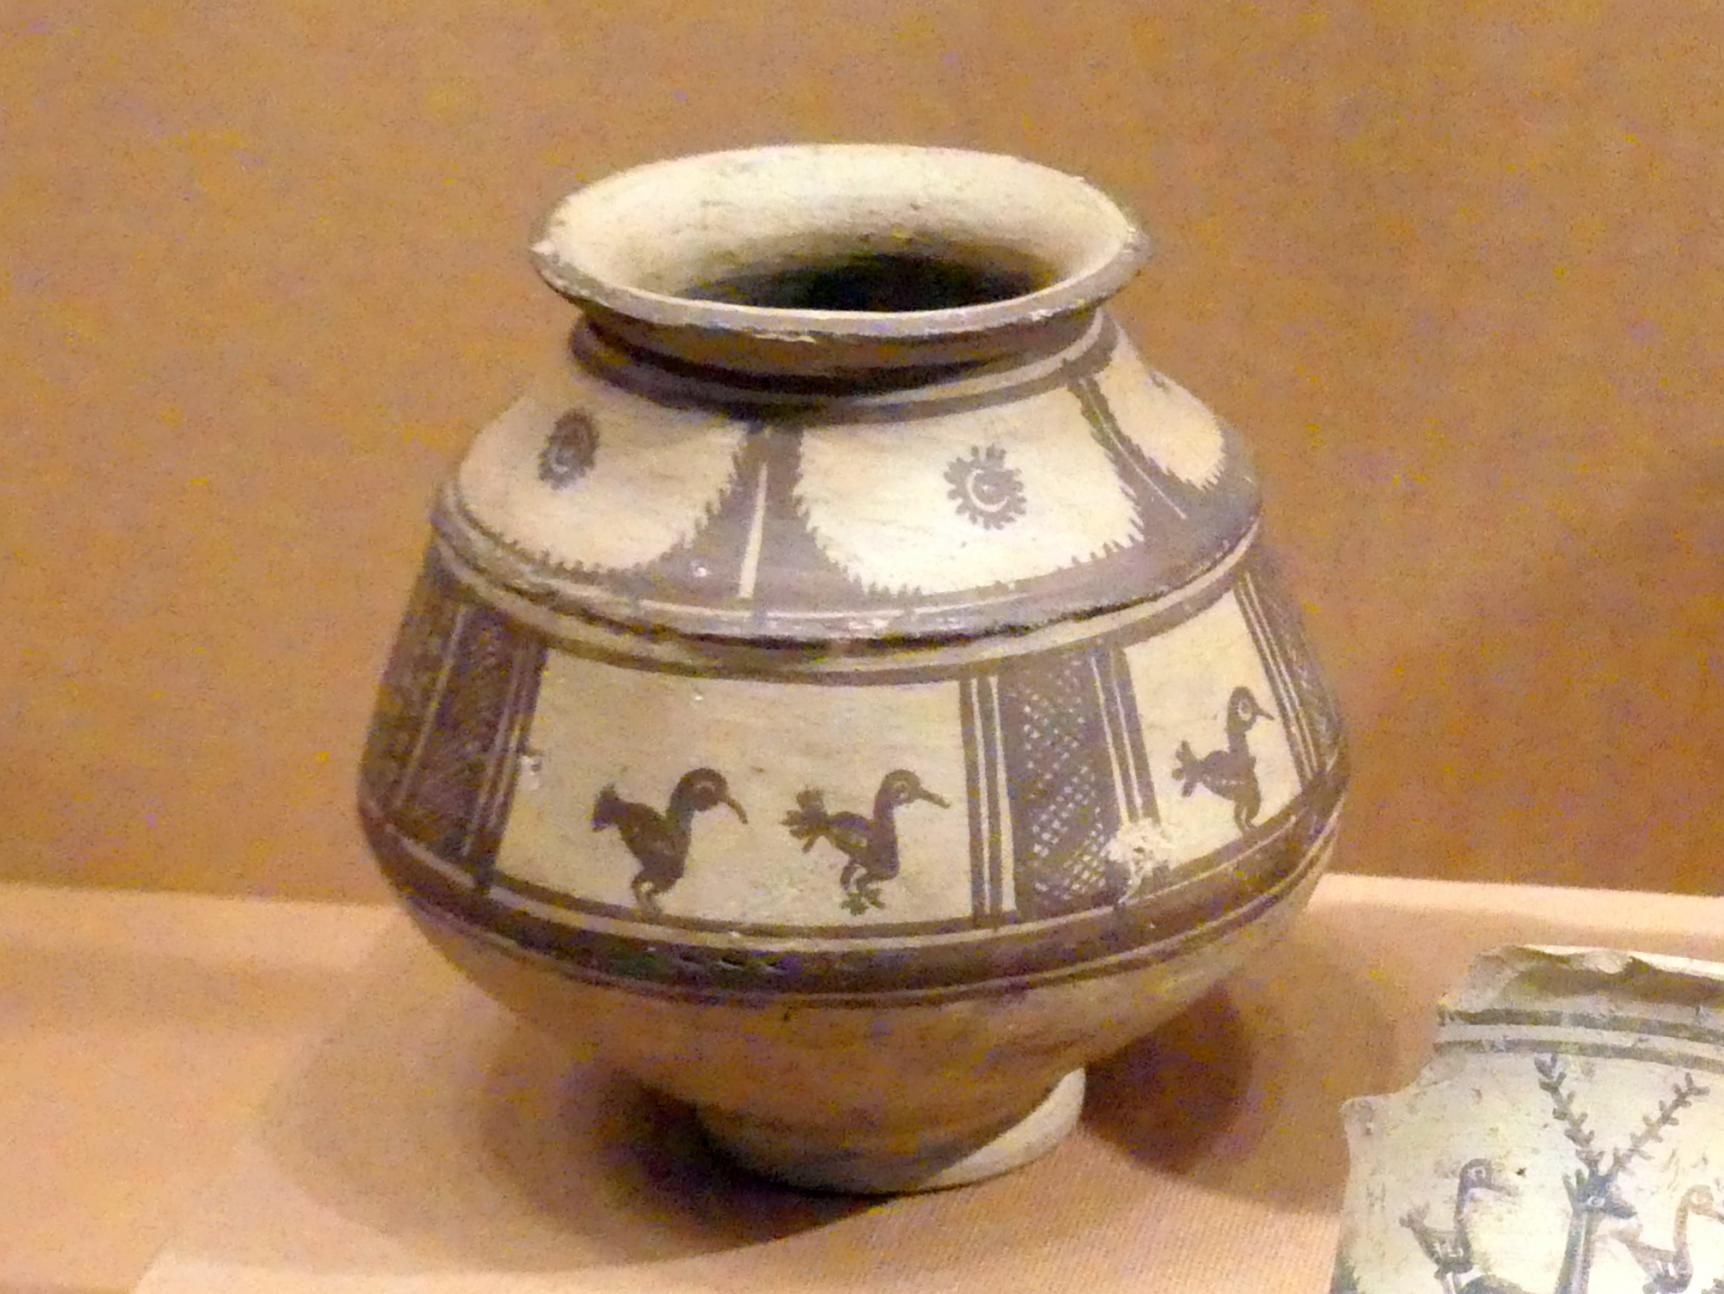 Gefäß mit Vogelpaar-Dekor, 1600 - 1400 v. Chr.